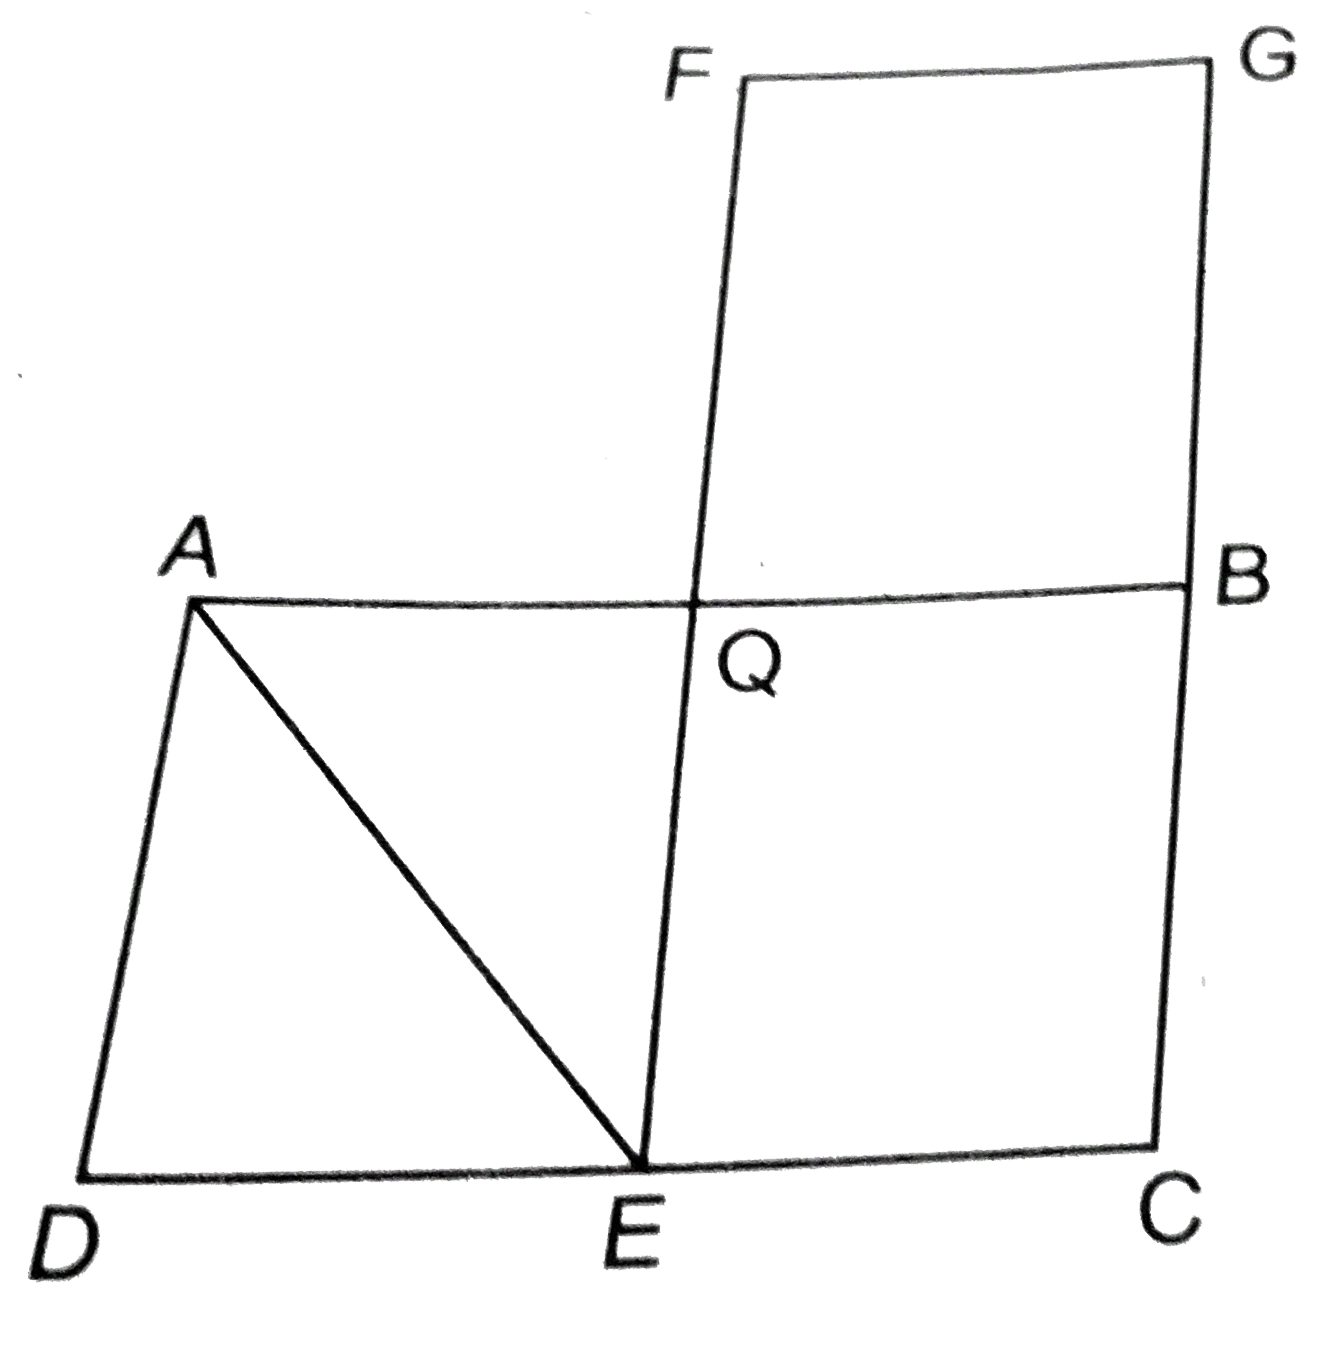 दी आकृति में, ABCD और FECG बराबर क्षेत्रफल के समान्तर चतुर्भुज है। यदि ar(DeltaAQE) =12